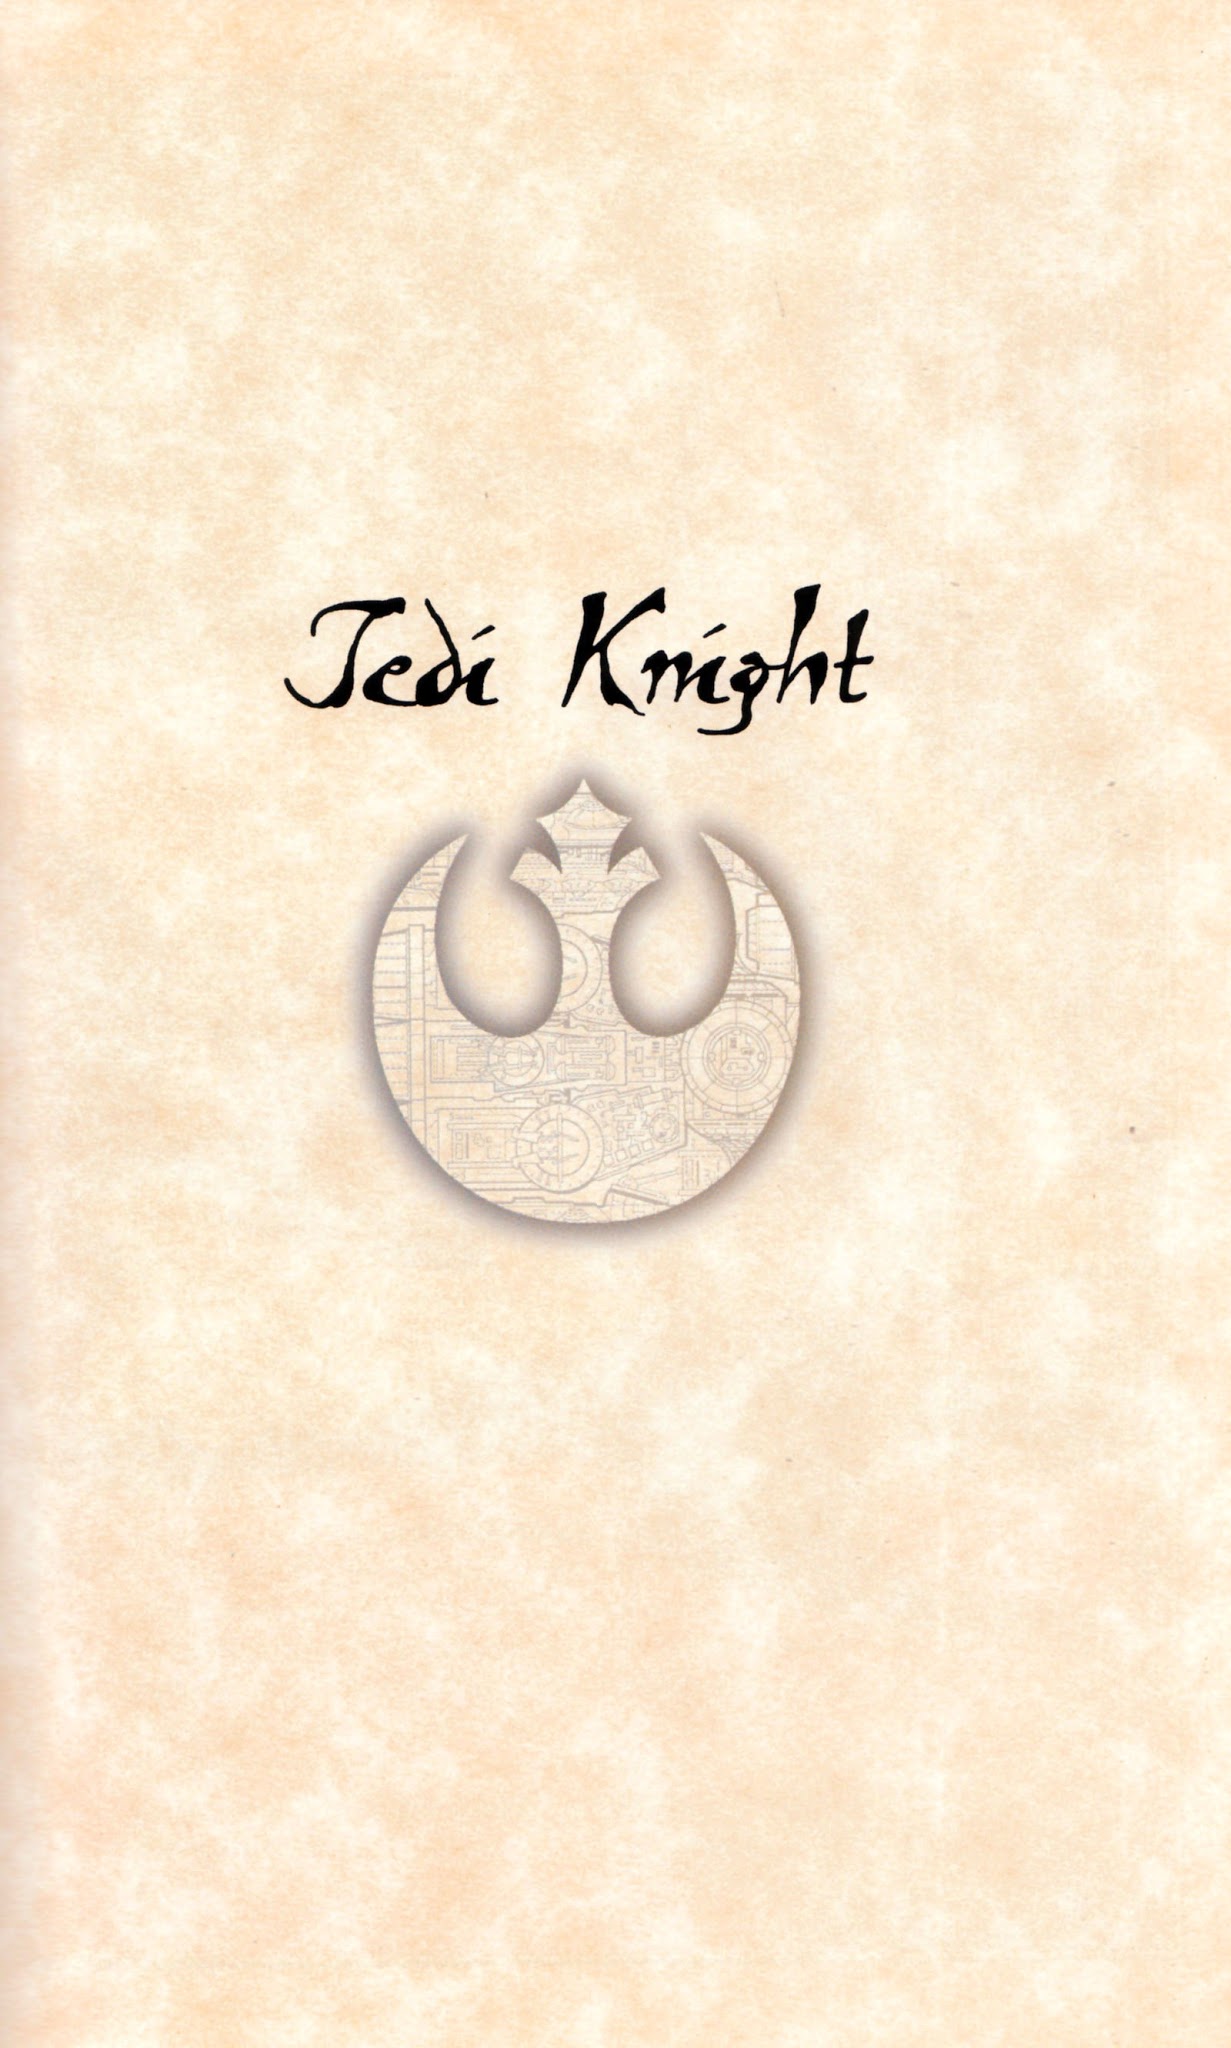 Read online Star Wars: Dark Forces comic -  Issue # TPB Jedi Knight - 7